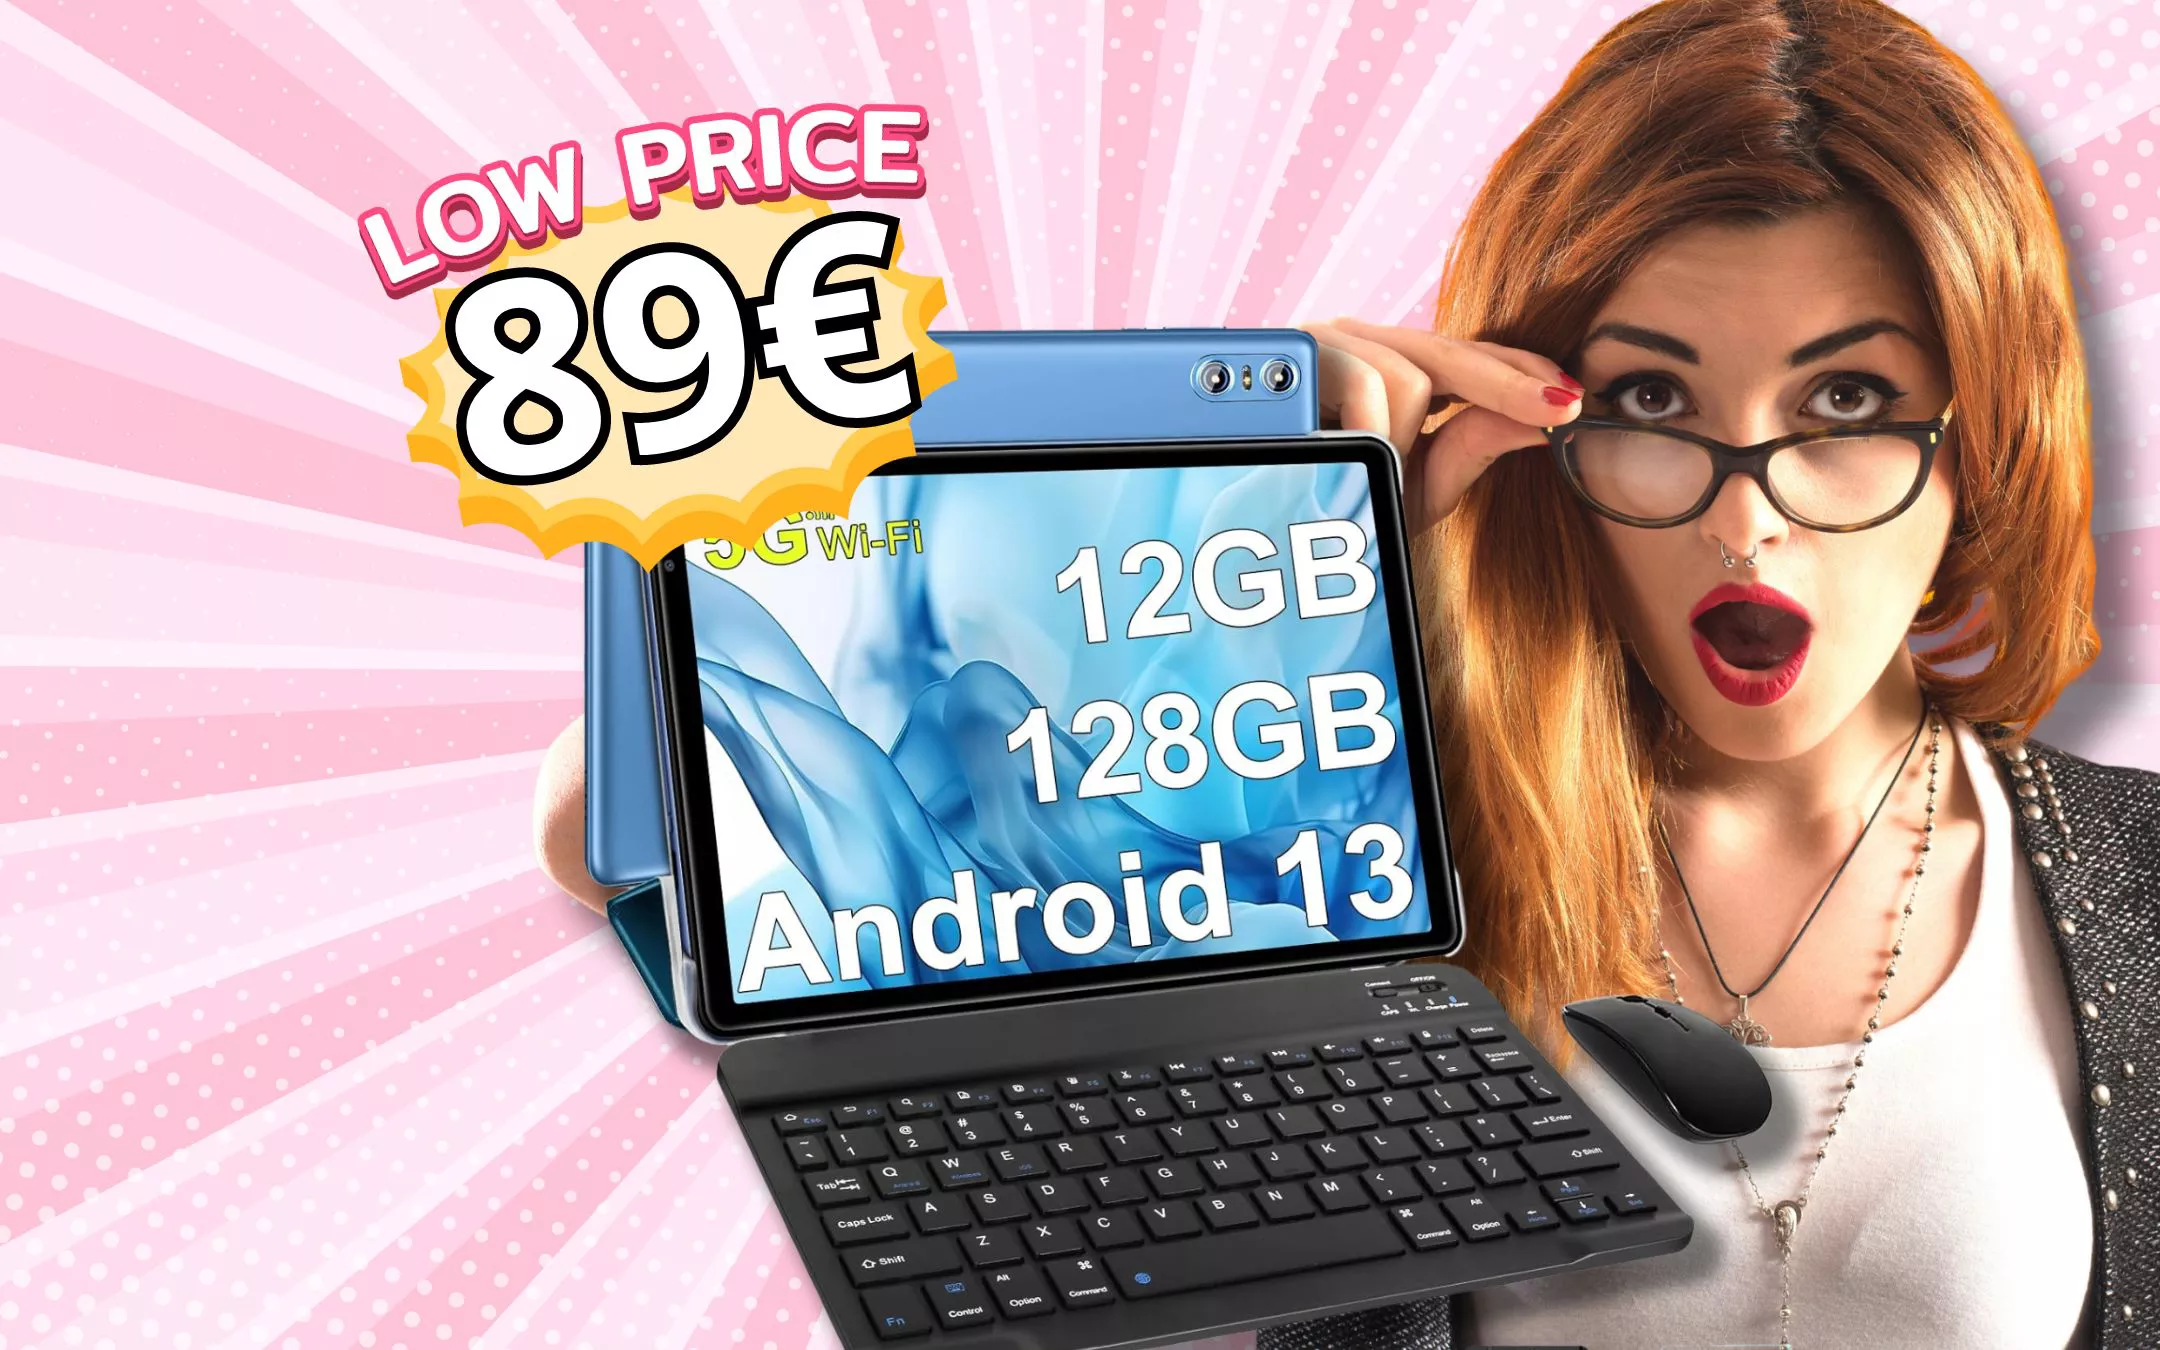 SOLO 89€ per Tablet Android che ti REGALA tastiera e mouse NEL PREZZO! -  Melablog